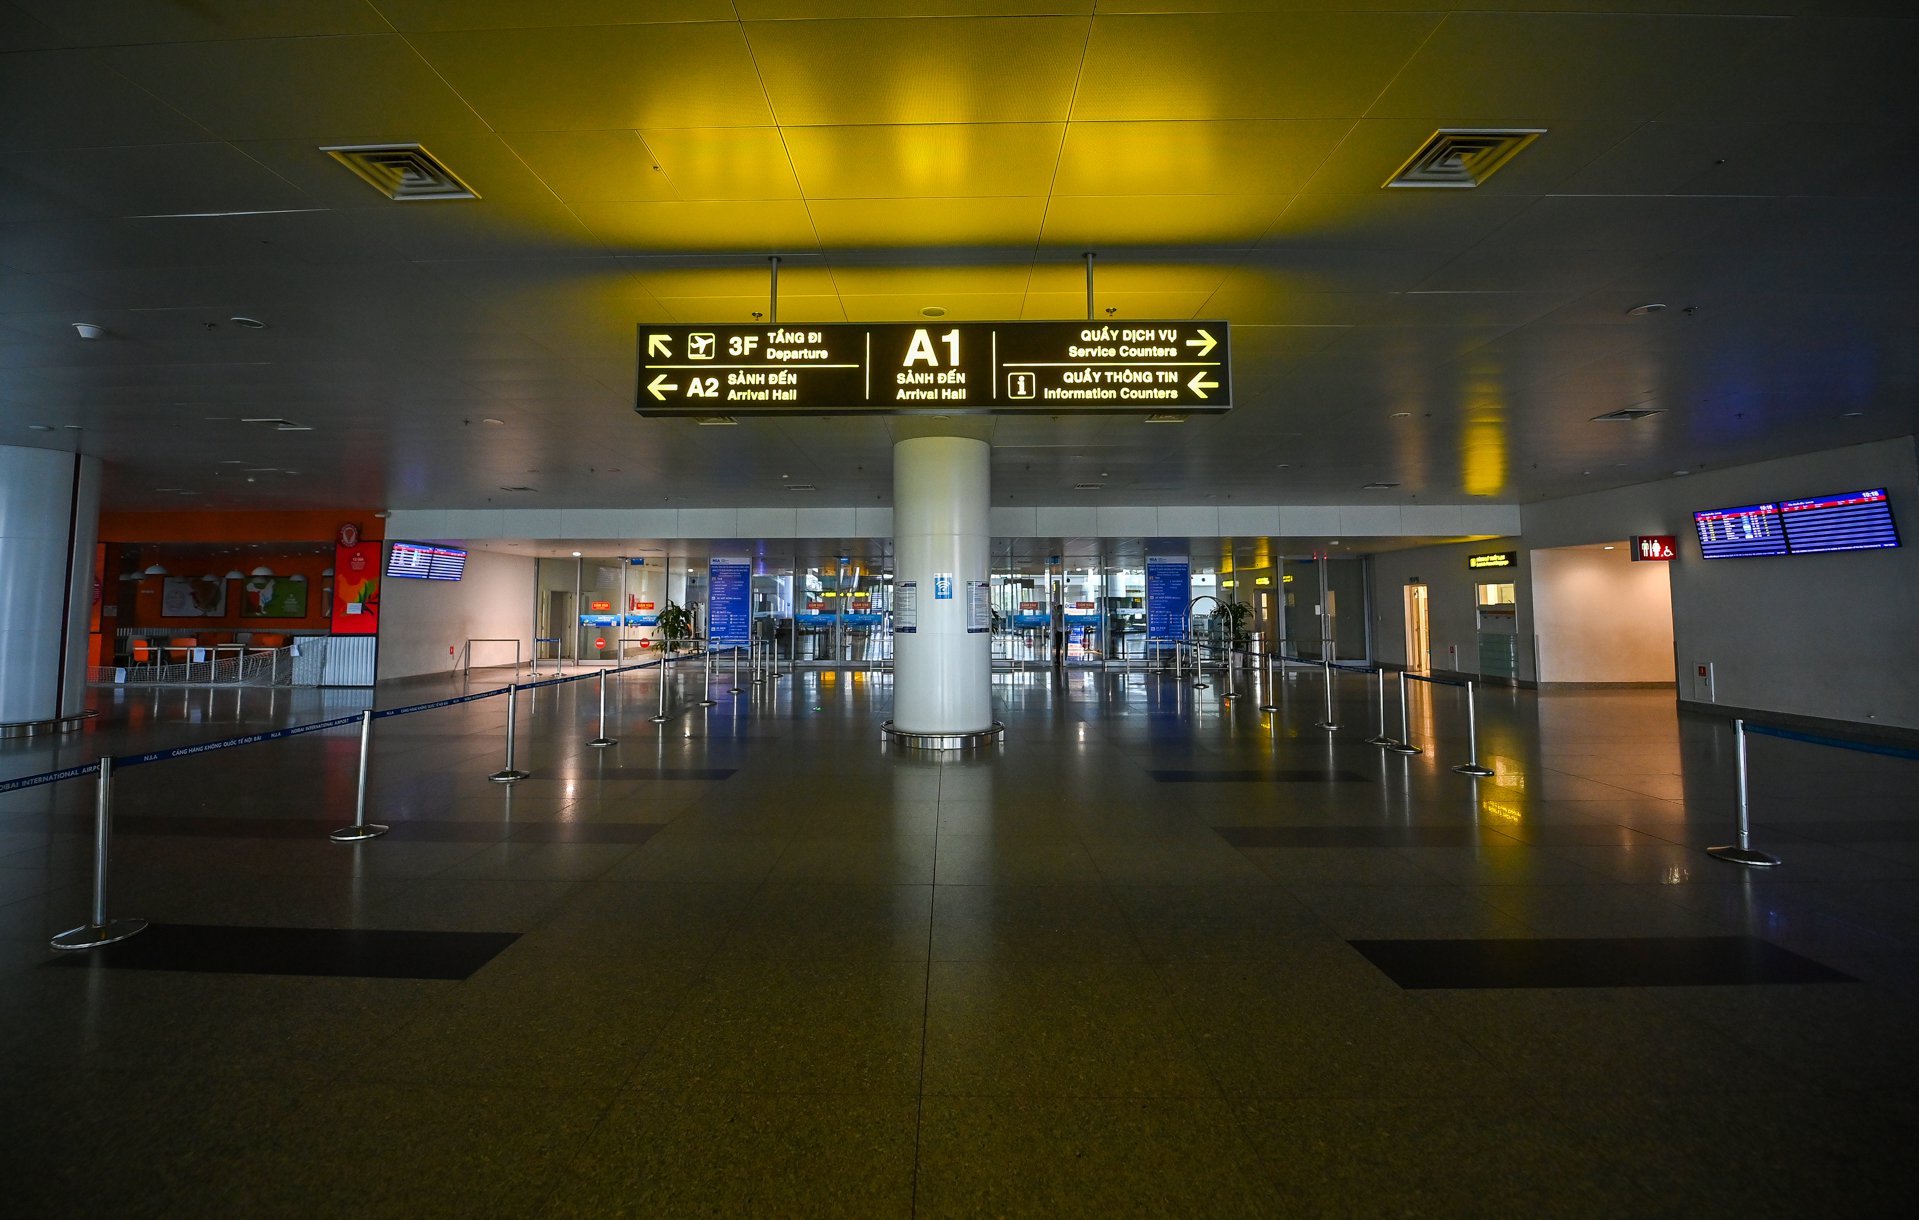 Ga quốc tế Nội Bài vẫn tối thui dù hoạt động bình thường trở lại - 8